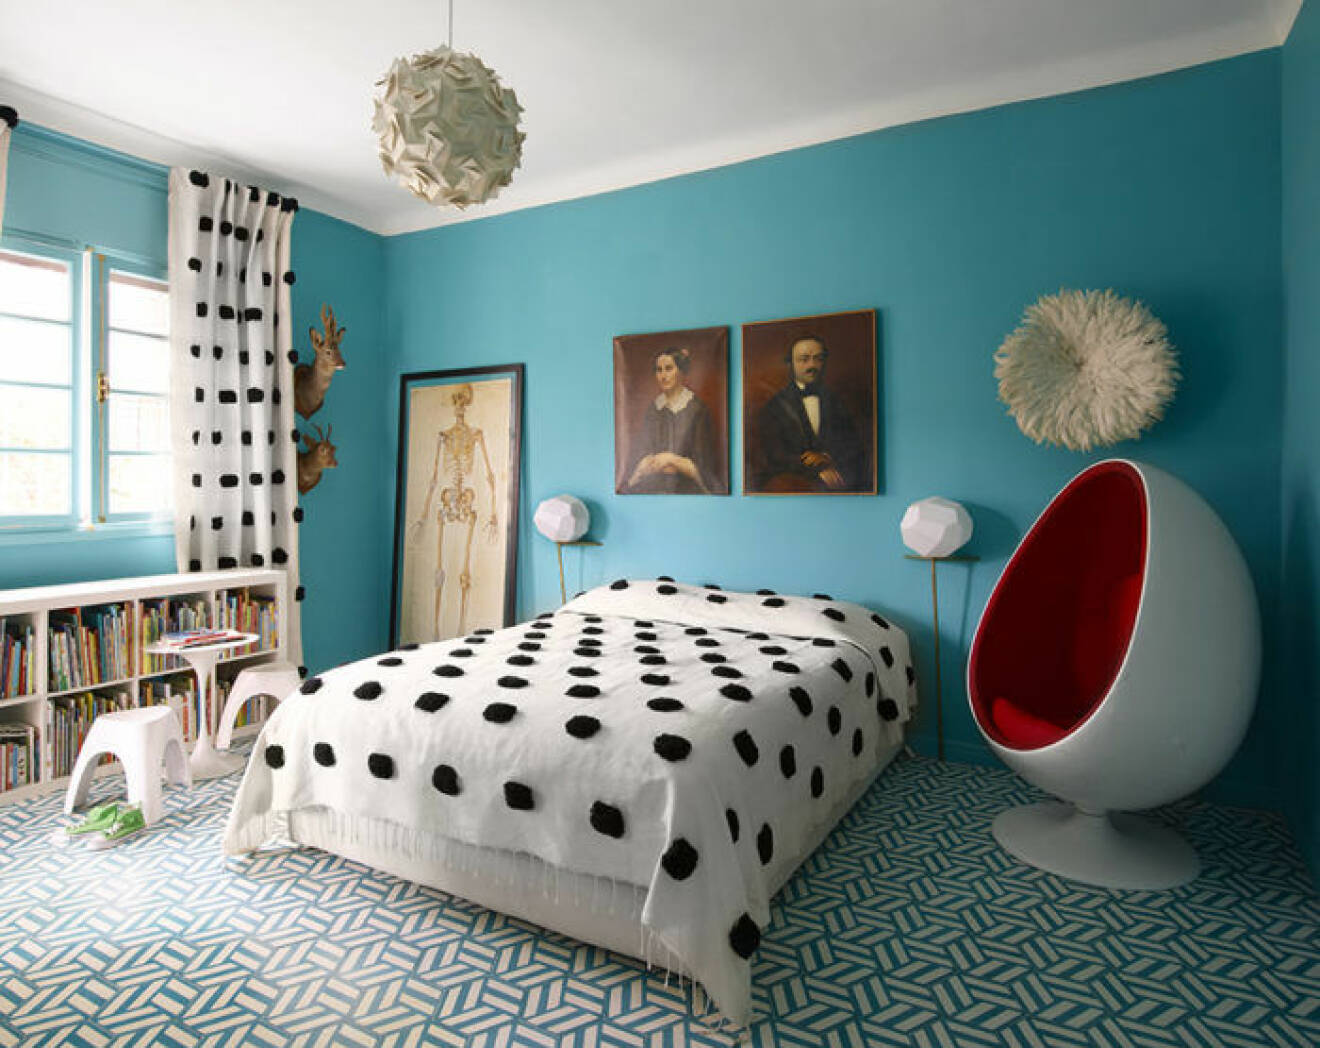 Sovrum med blå väggar som matchar det mönstrade golvet, gardiner och sängöverdrag i samma prickiga tyg